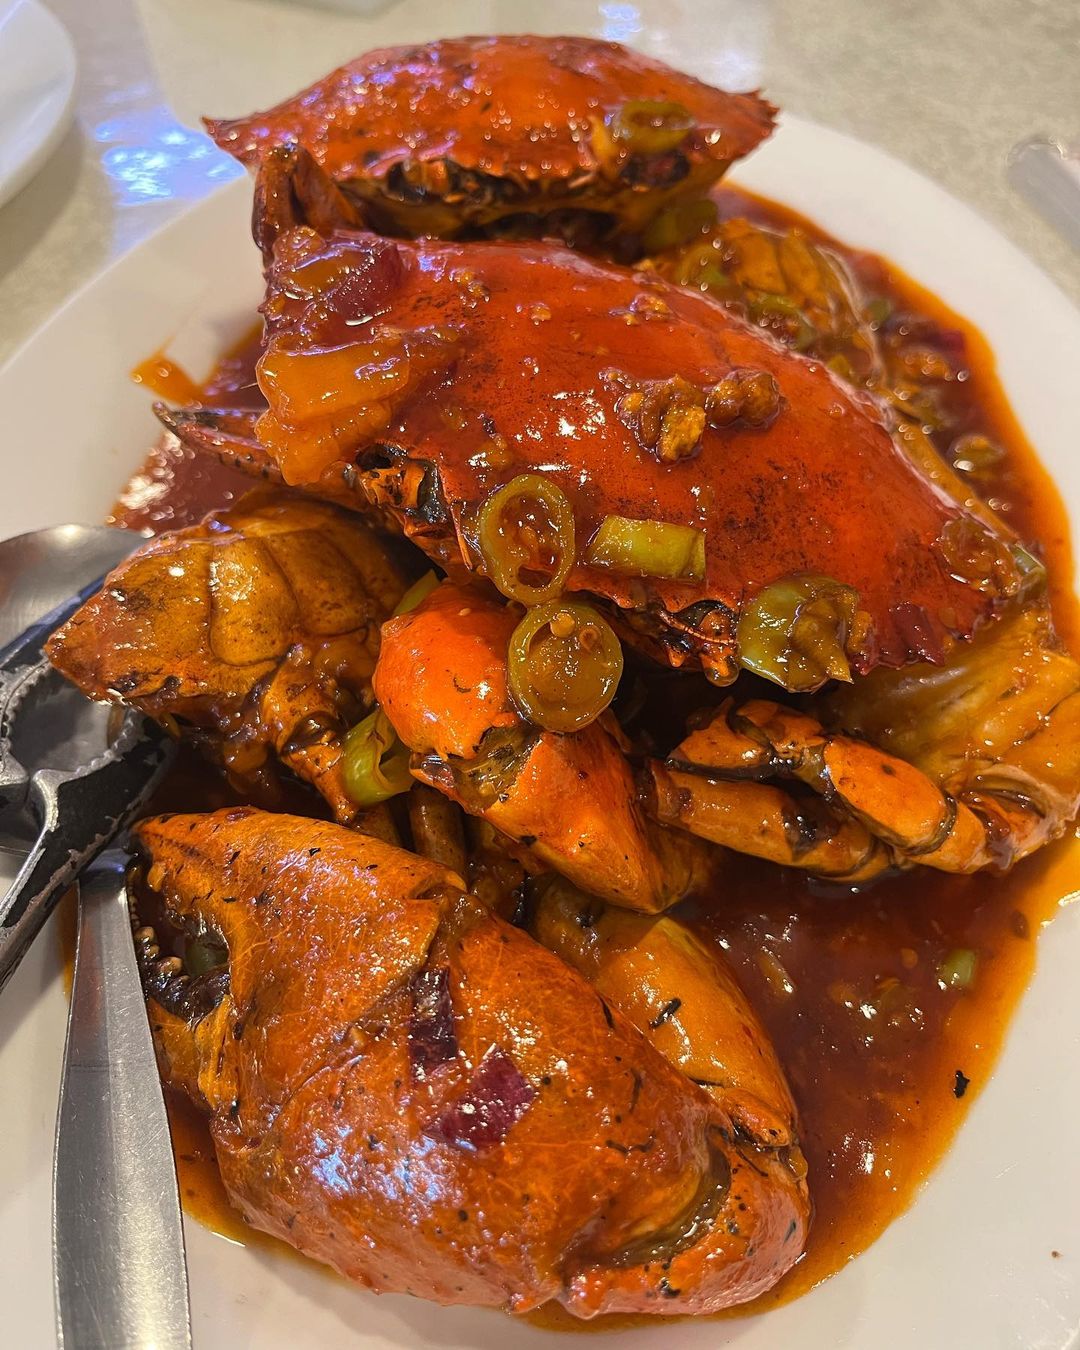 Huey Ying garlic chili crab